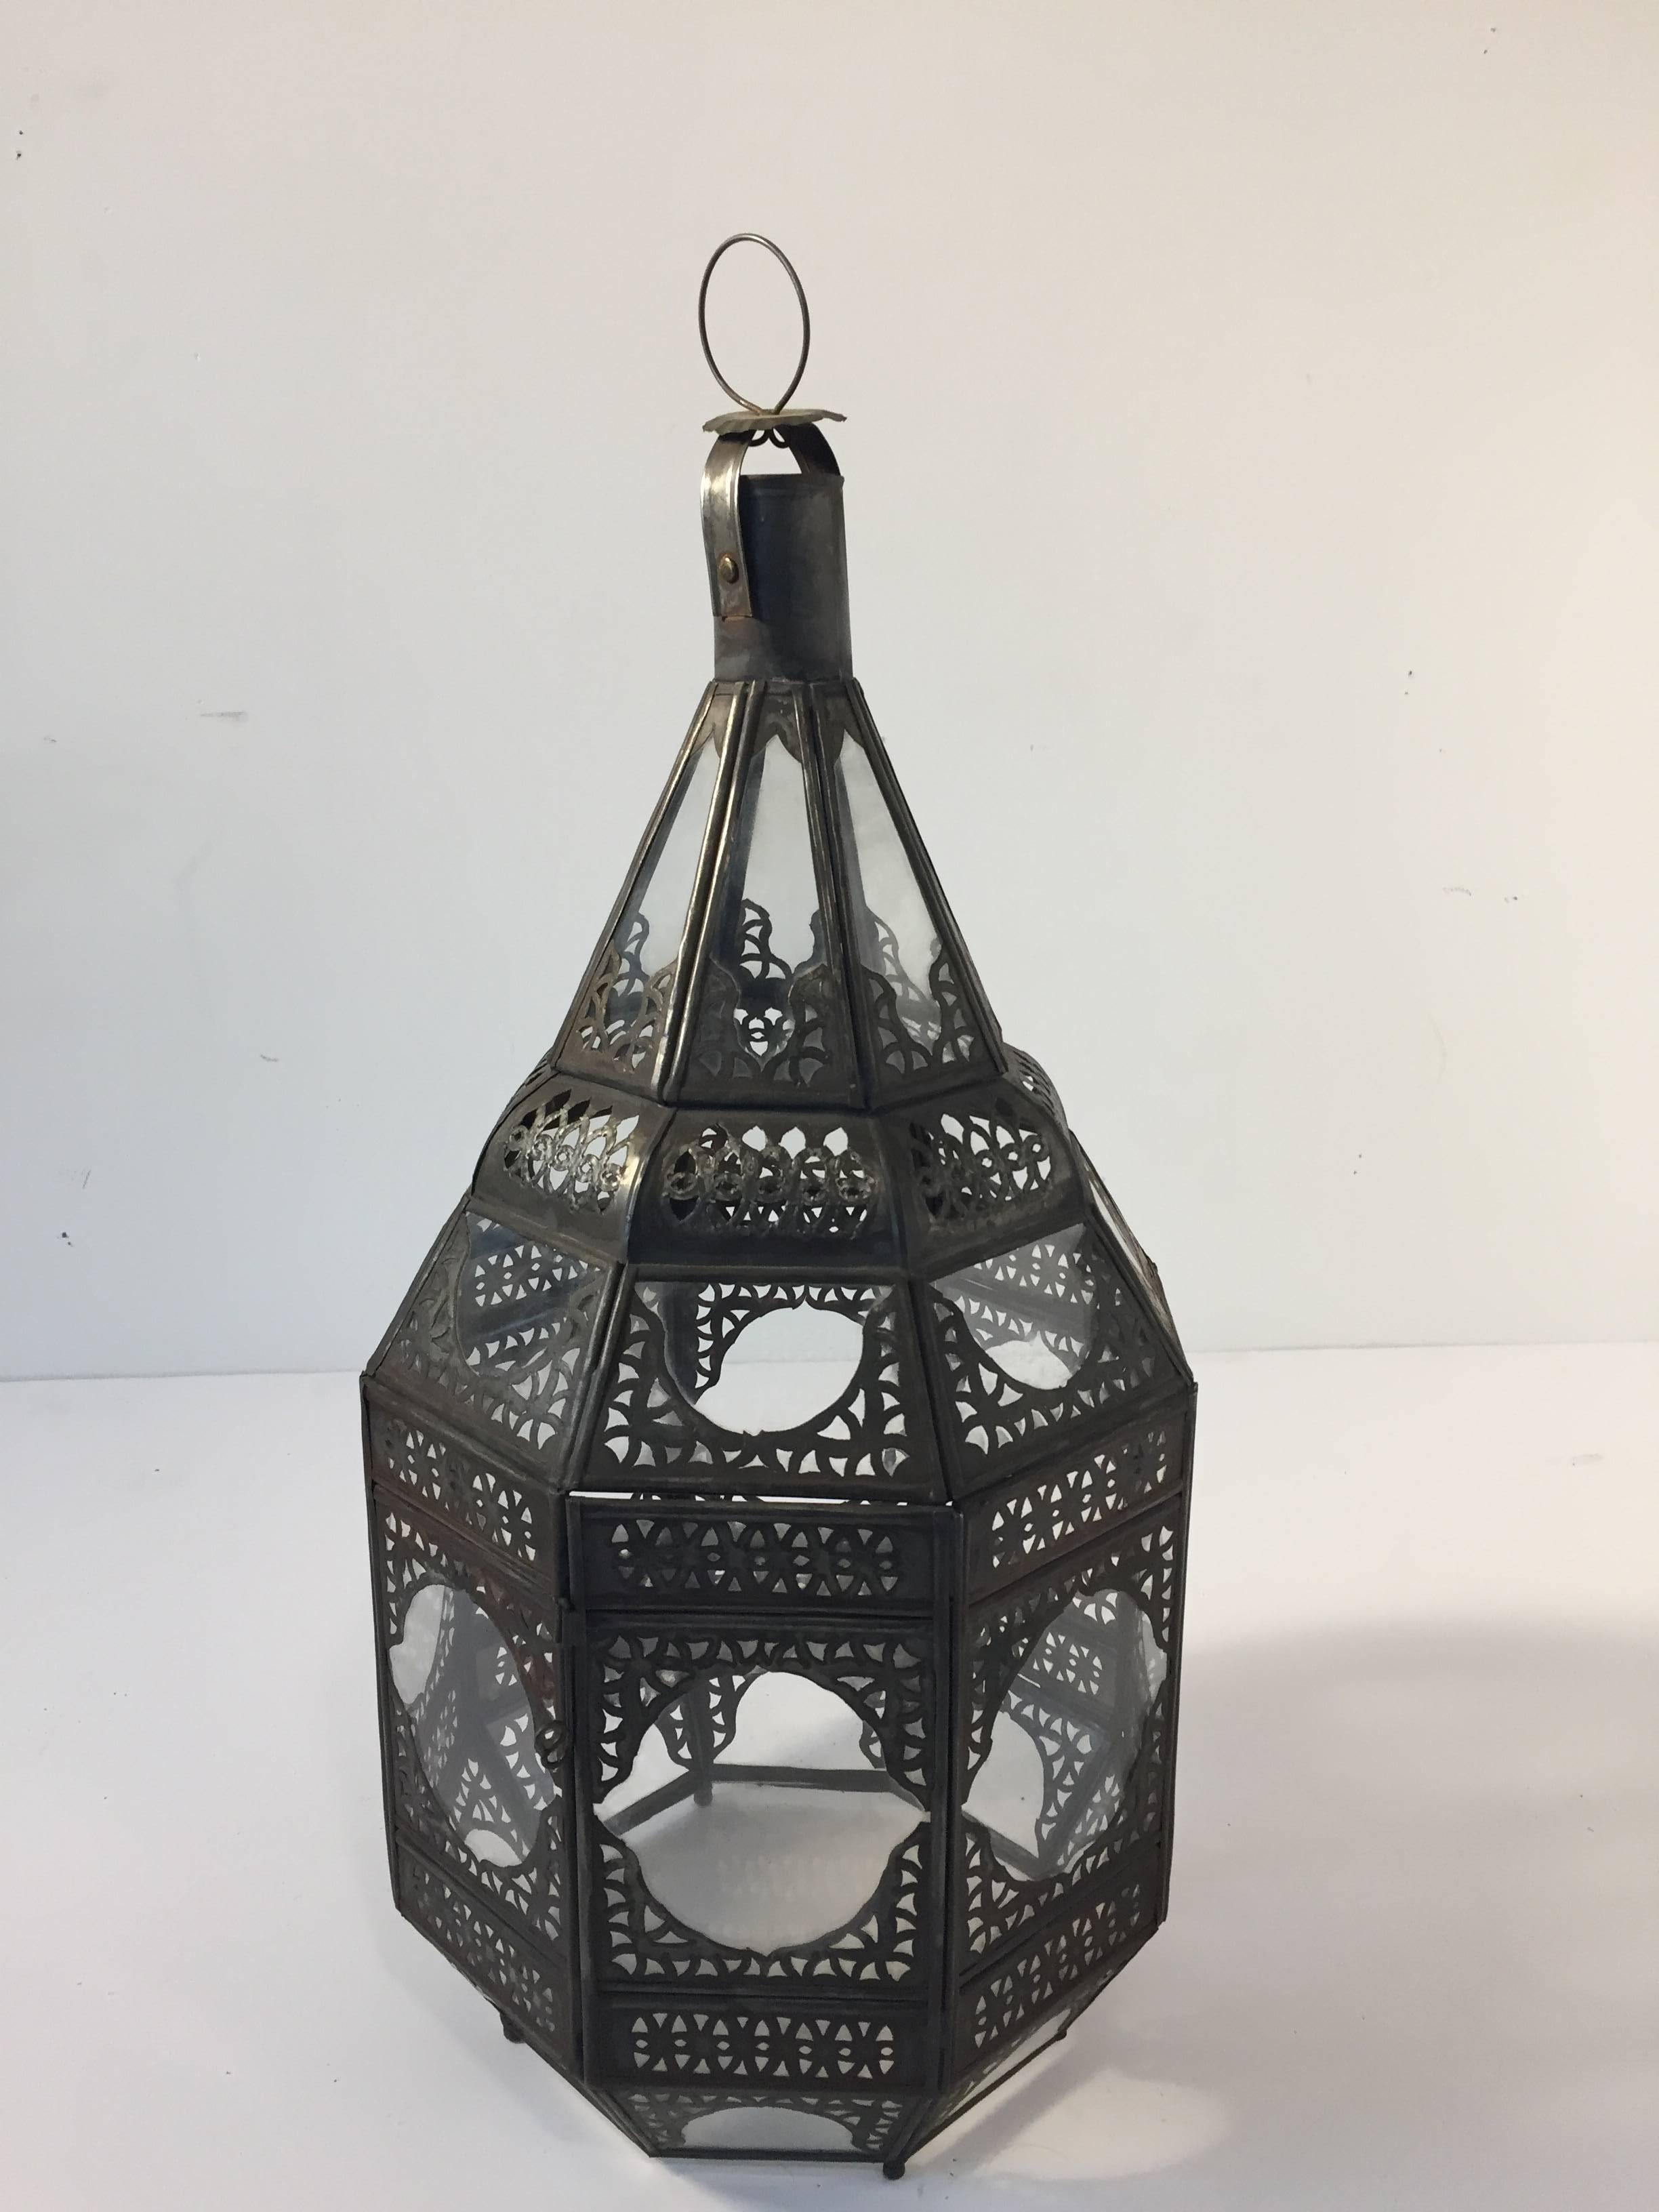 Lanterne marocaine en verre clair avec filigrane métallique.
Forme octogonale, délicatement fabriquée à la main par des artisans au Maroc.
Finition en métal couleur bronze.
Peut être utilisé avec une bougie ou être raccordé à l'électricité.
Multiple